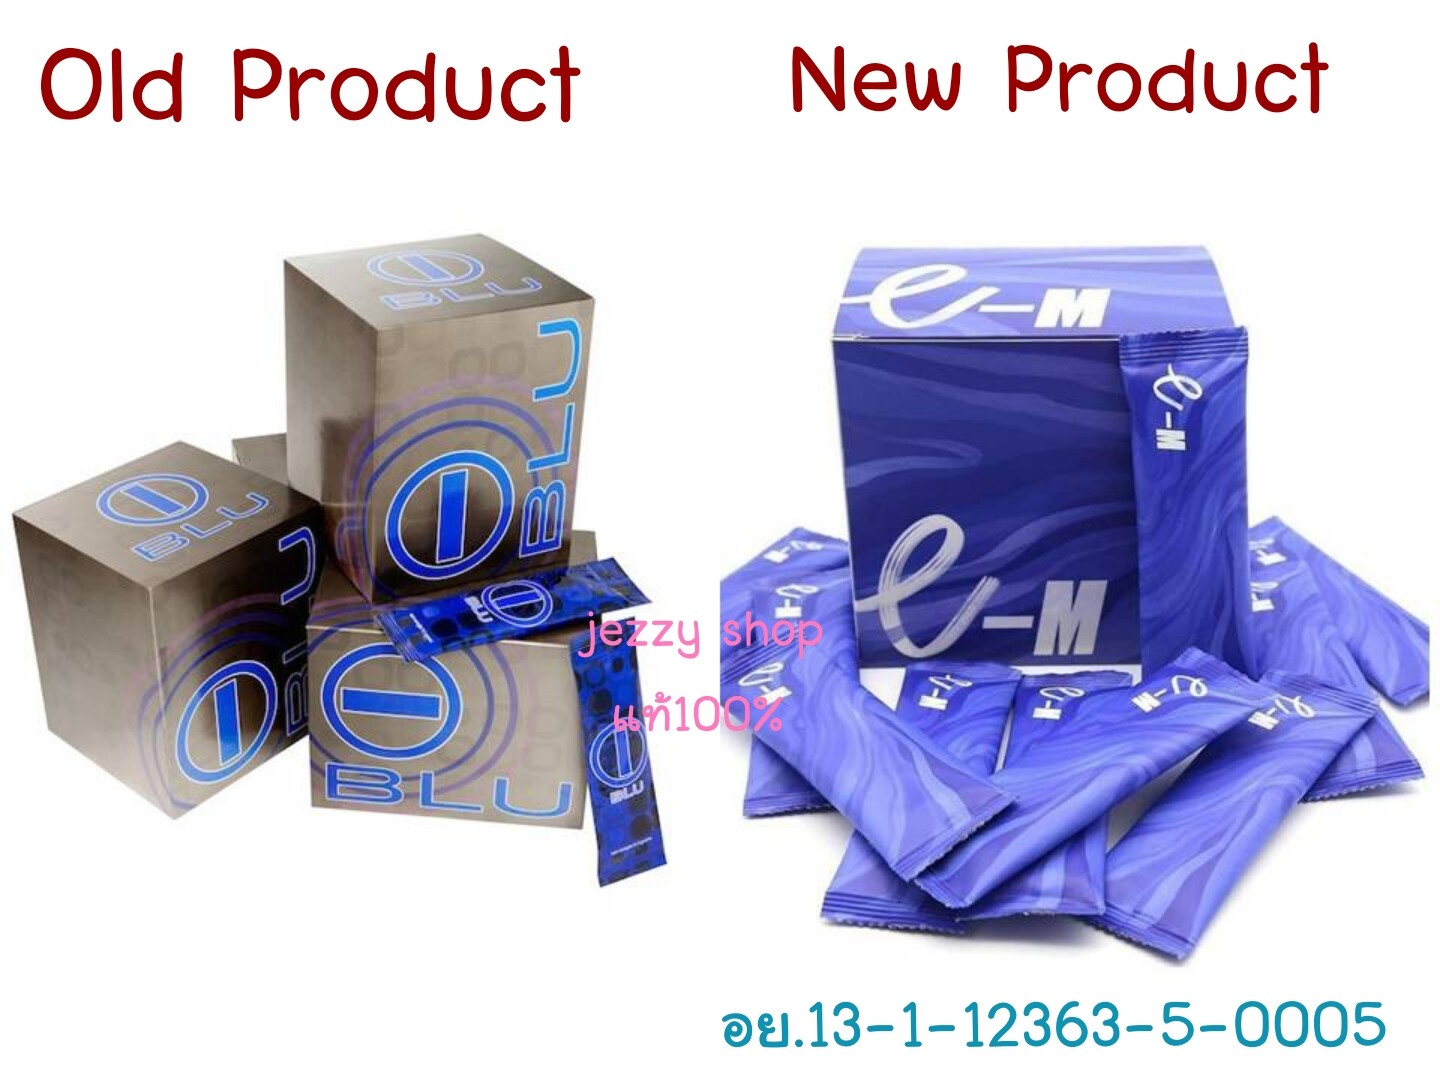 แพคเก็จใหม่ ผลิตภัณฑ์เสริมอาหาร E-M อี-เอ็ม 30 ซอง ( ไอบลู IBLU ไอบีแอลยู ตัวเก่า ) จาก Bhip สร้างกล้ามเนื้อ ควบคุมน้ำหนัก แท้100%